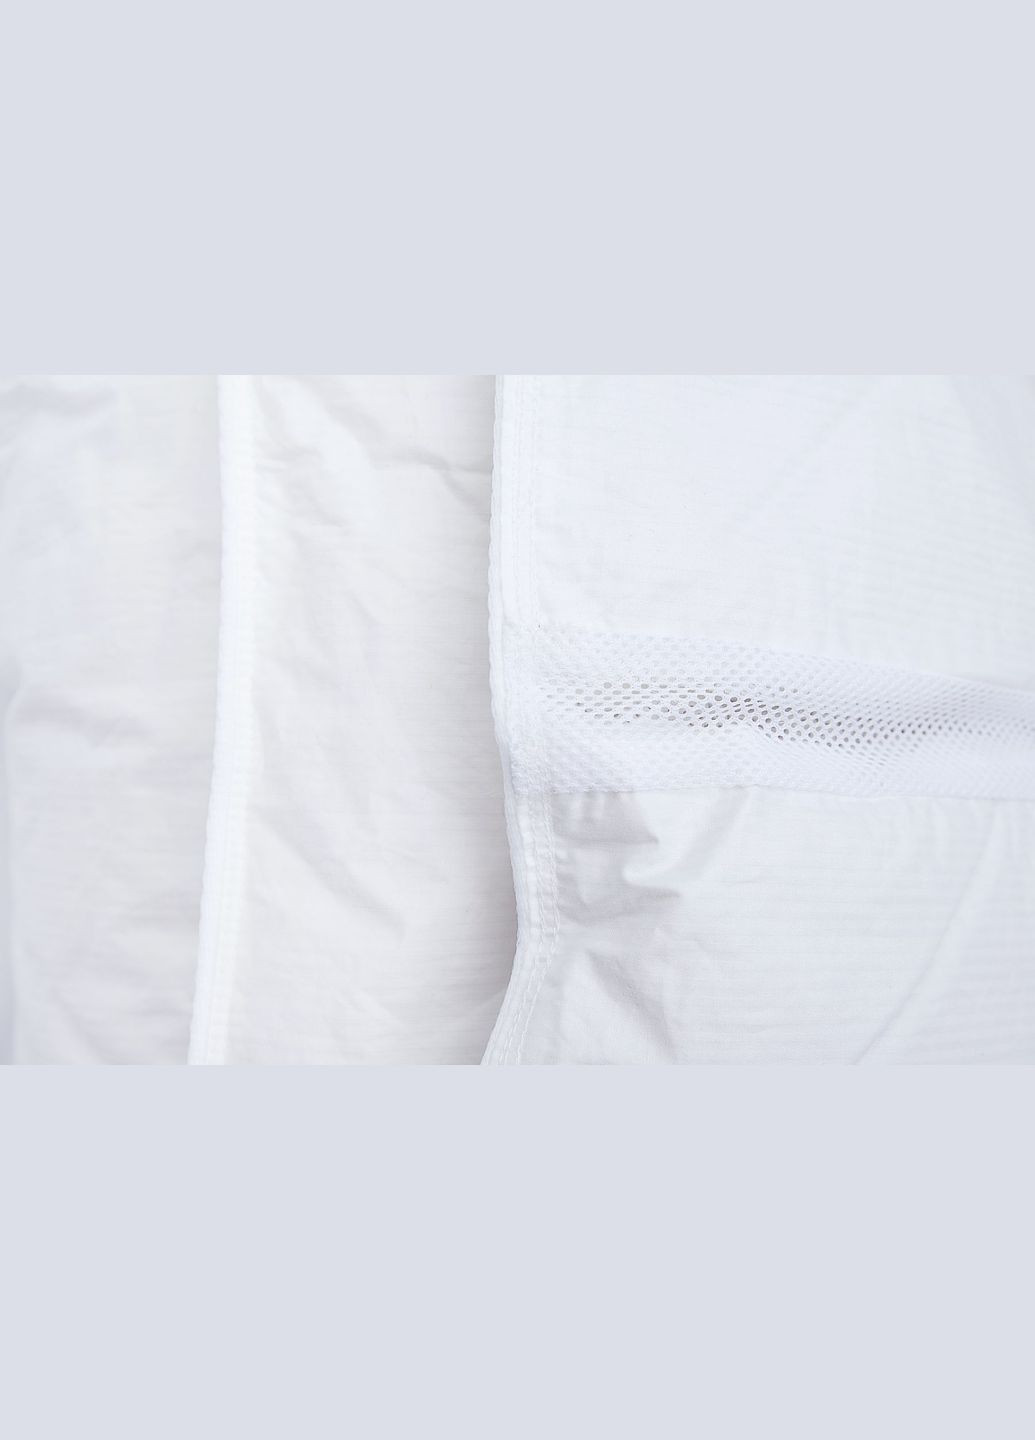 Демисезонное одеяло со 100% белым гусиным пухом двуспальное Climatecomfort 160х215 () Iglen 160215110w (282313406)